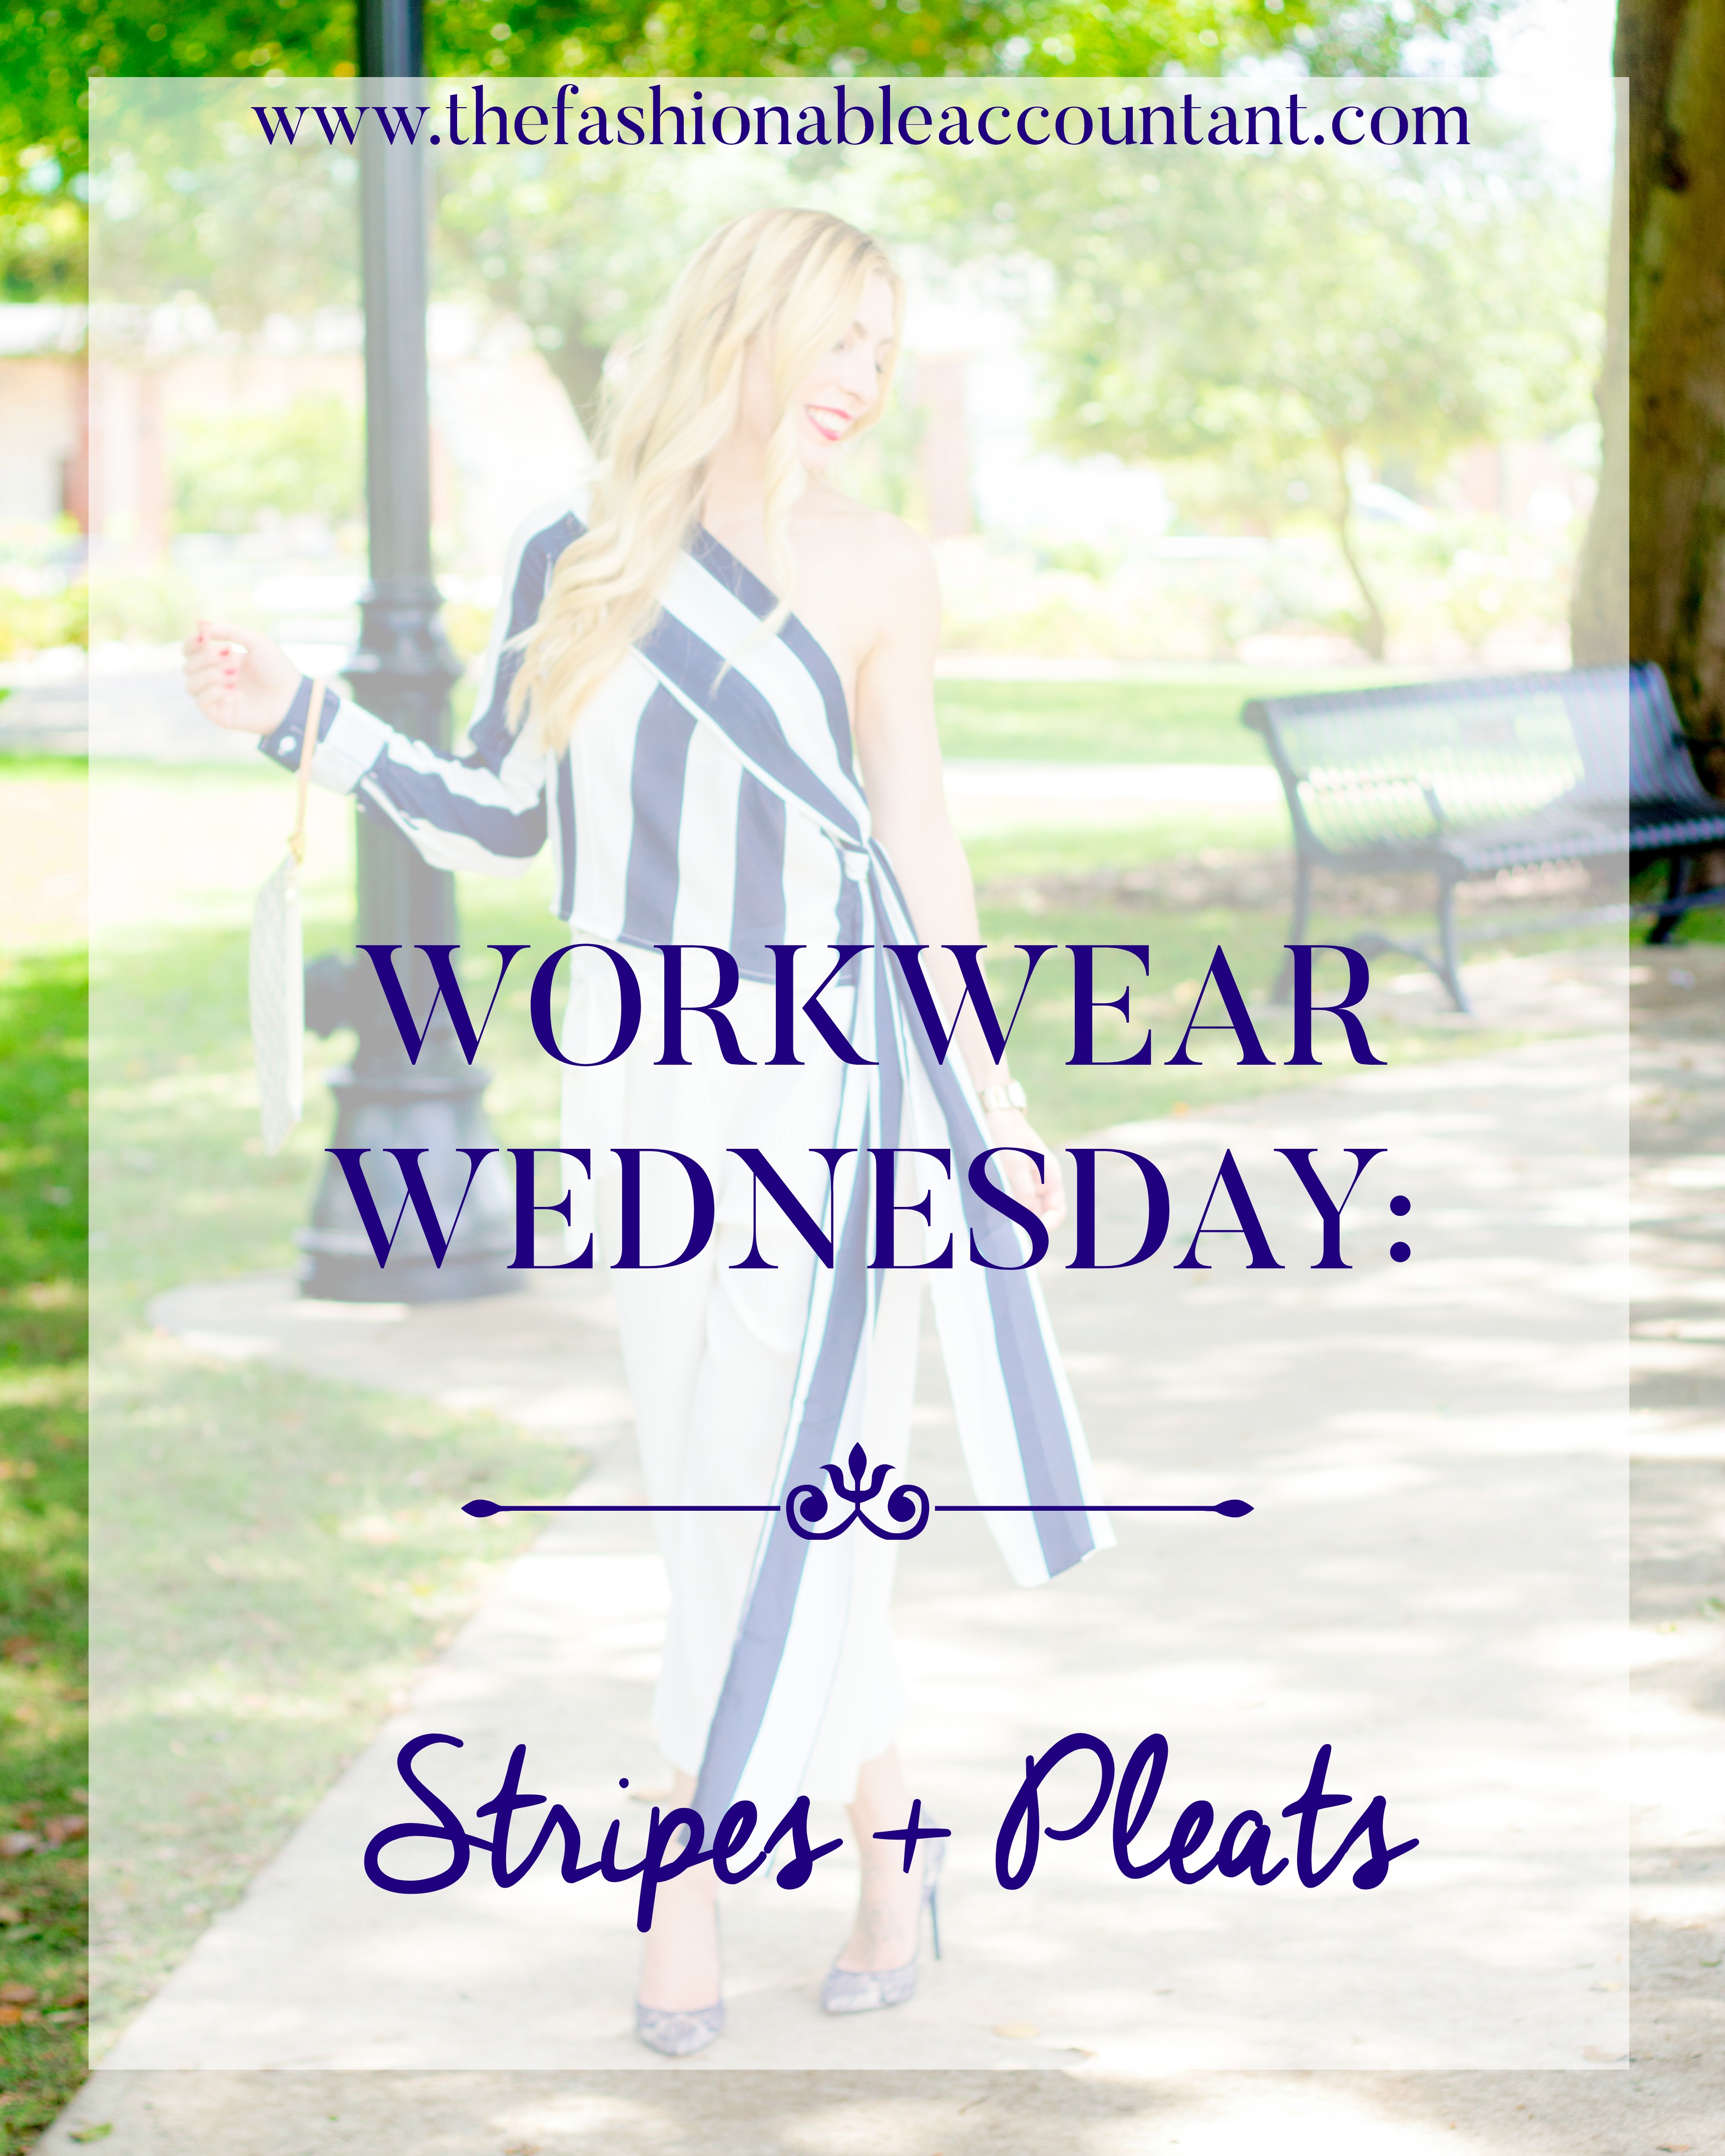 WORKWEAR WEDNESDAY: STRIPES + PLEATS